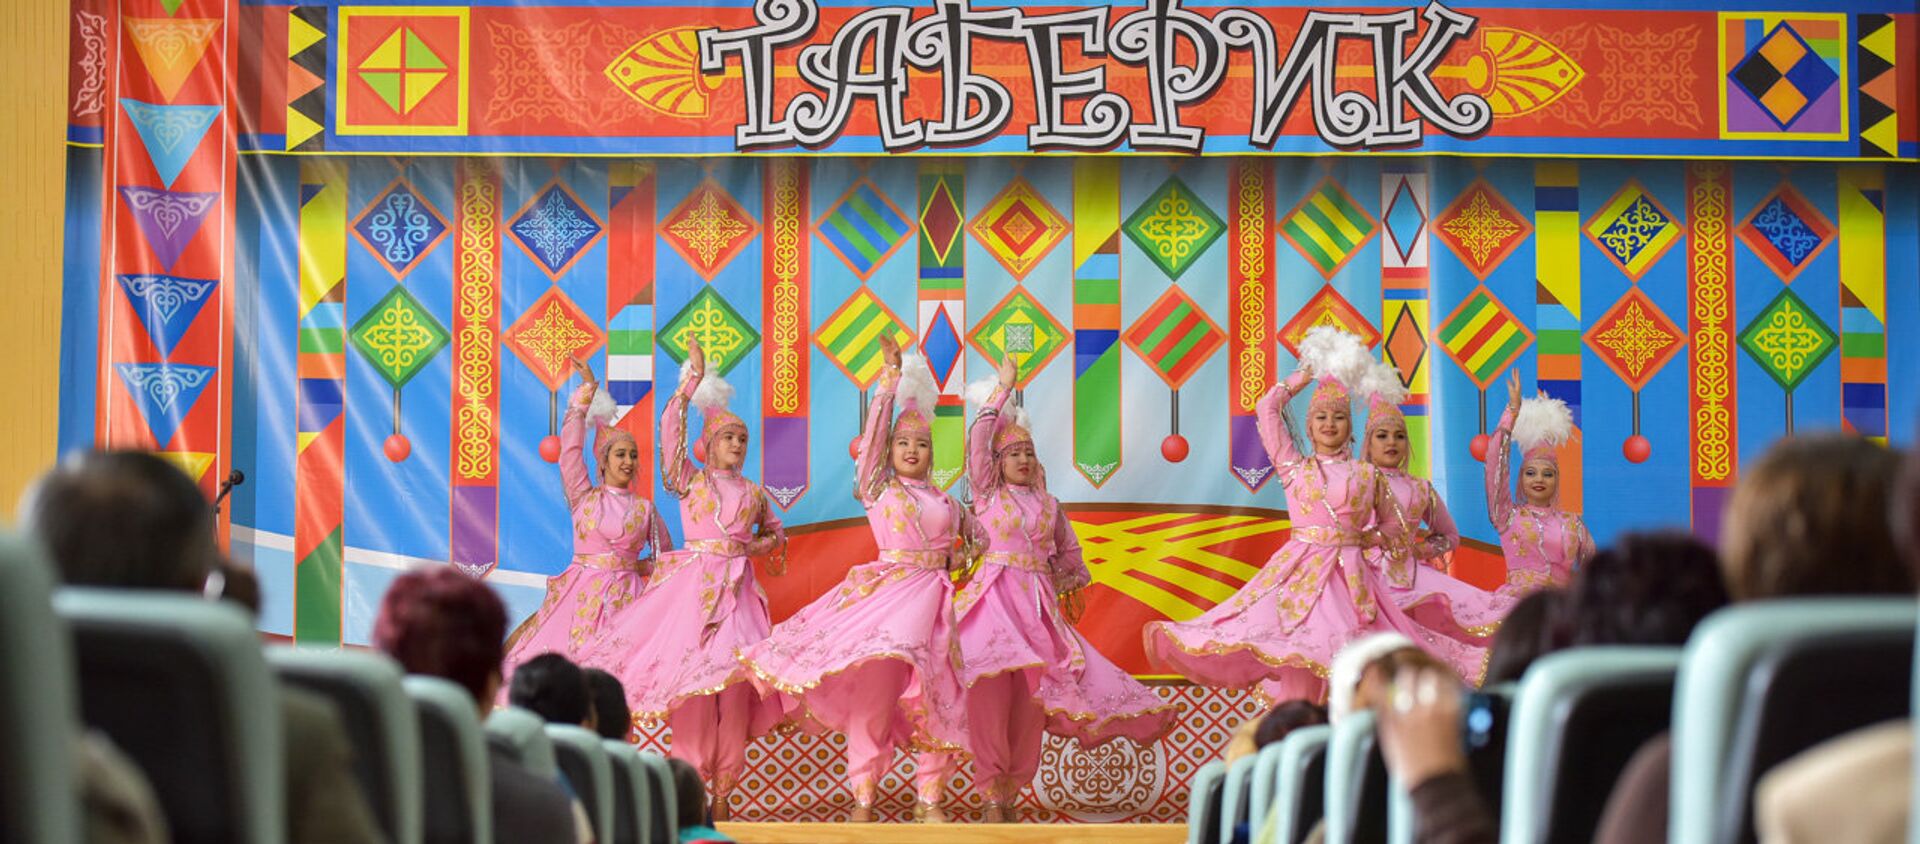 Выступление в детском музыкальном театре Бишкека. Архивное фото - Sputnik Кыргызстан, 1920, 12.11.2021